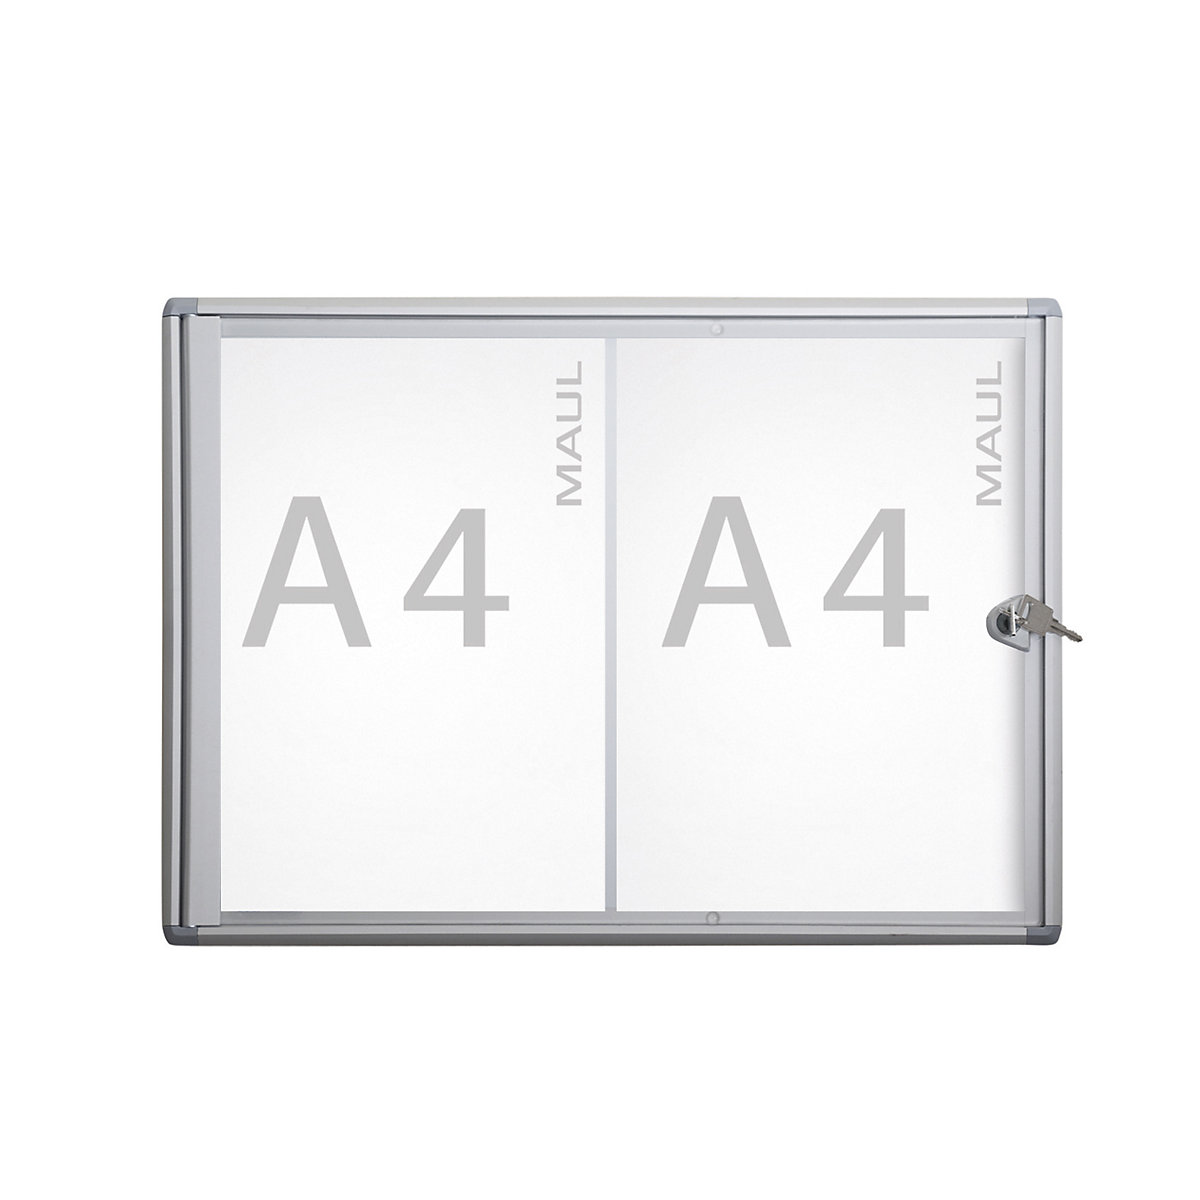 Display case, external depth 27 mm – MAUL, external height 350 mm, 2 x A4-2